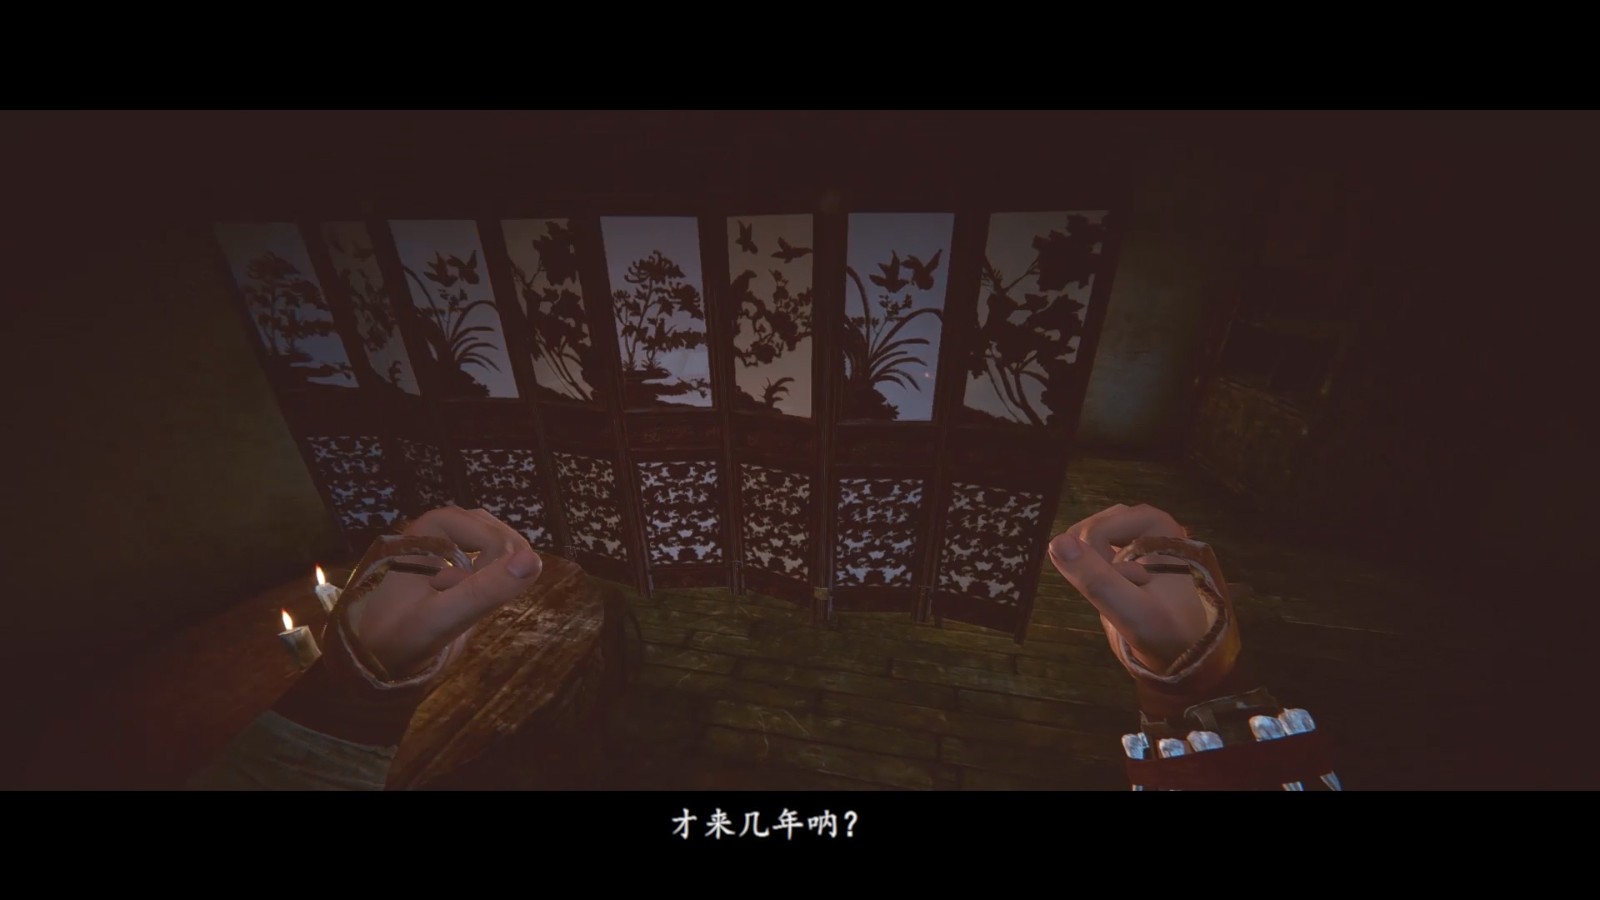 《紫塞秋風》大型DLC“滾刀肉”宣傳片 將免費更新